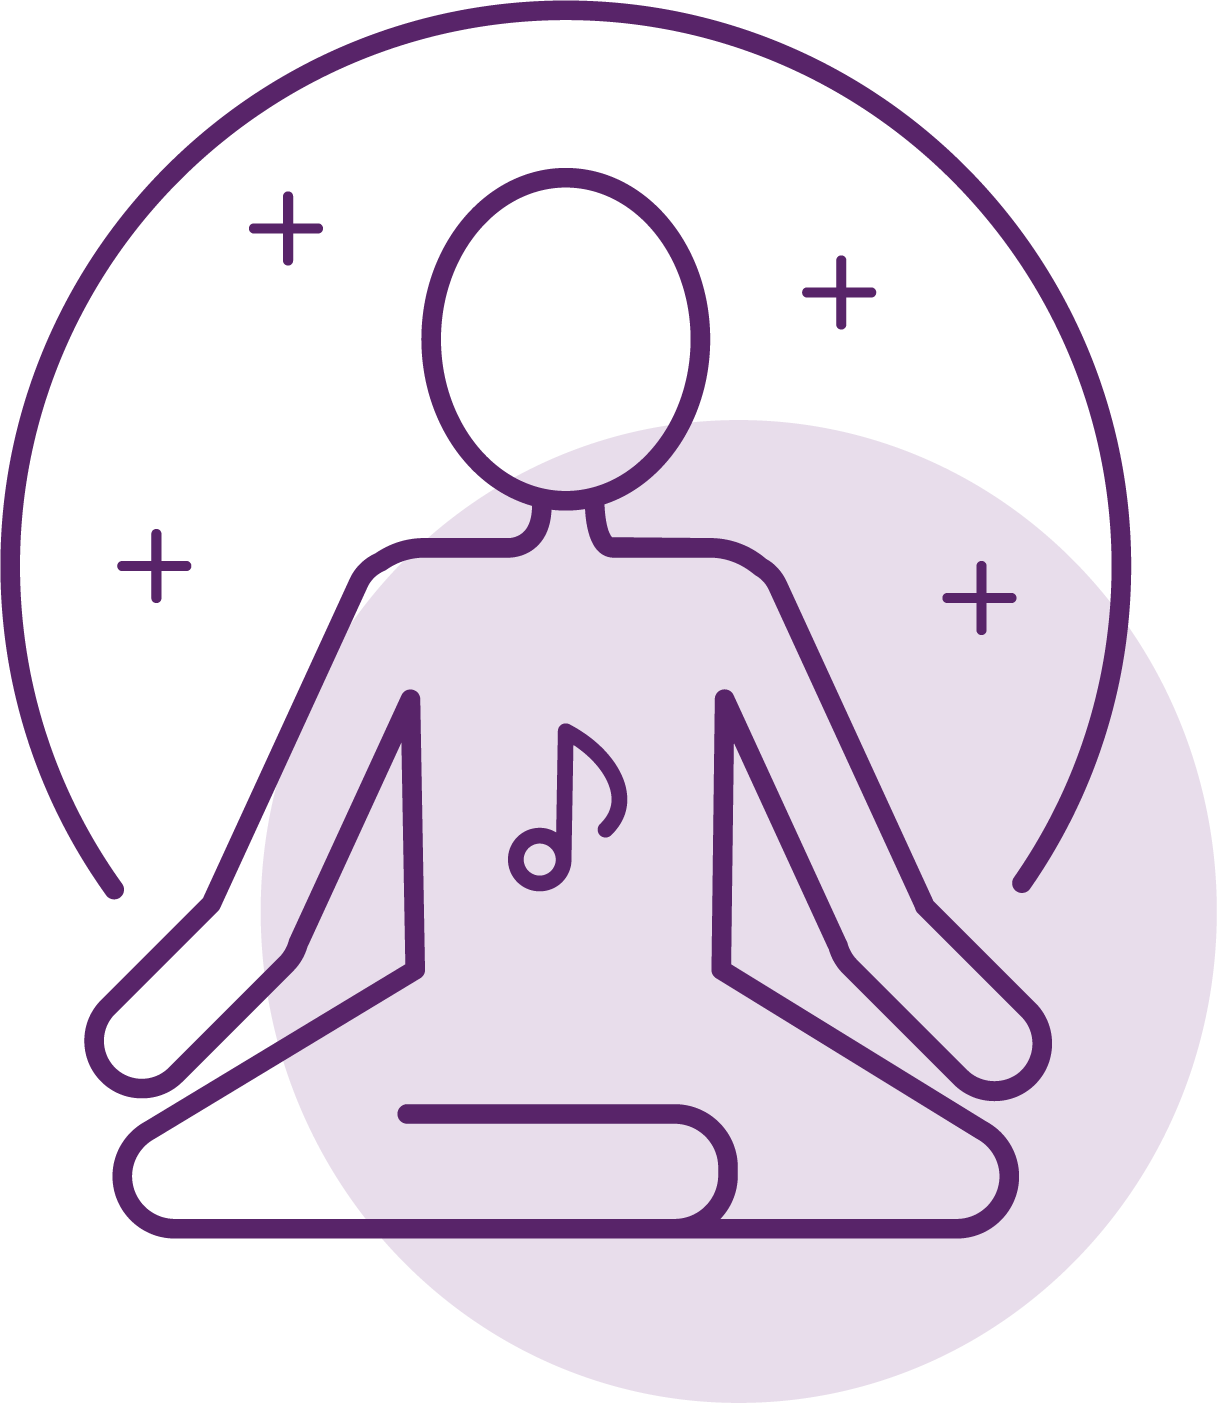 Icône d’une posture de yoga, cours bien-être pour avoir confiance en sa voix